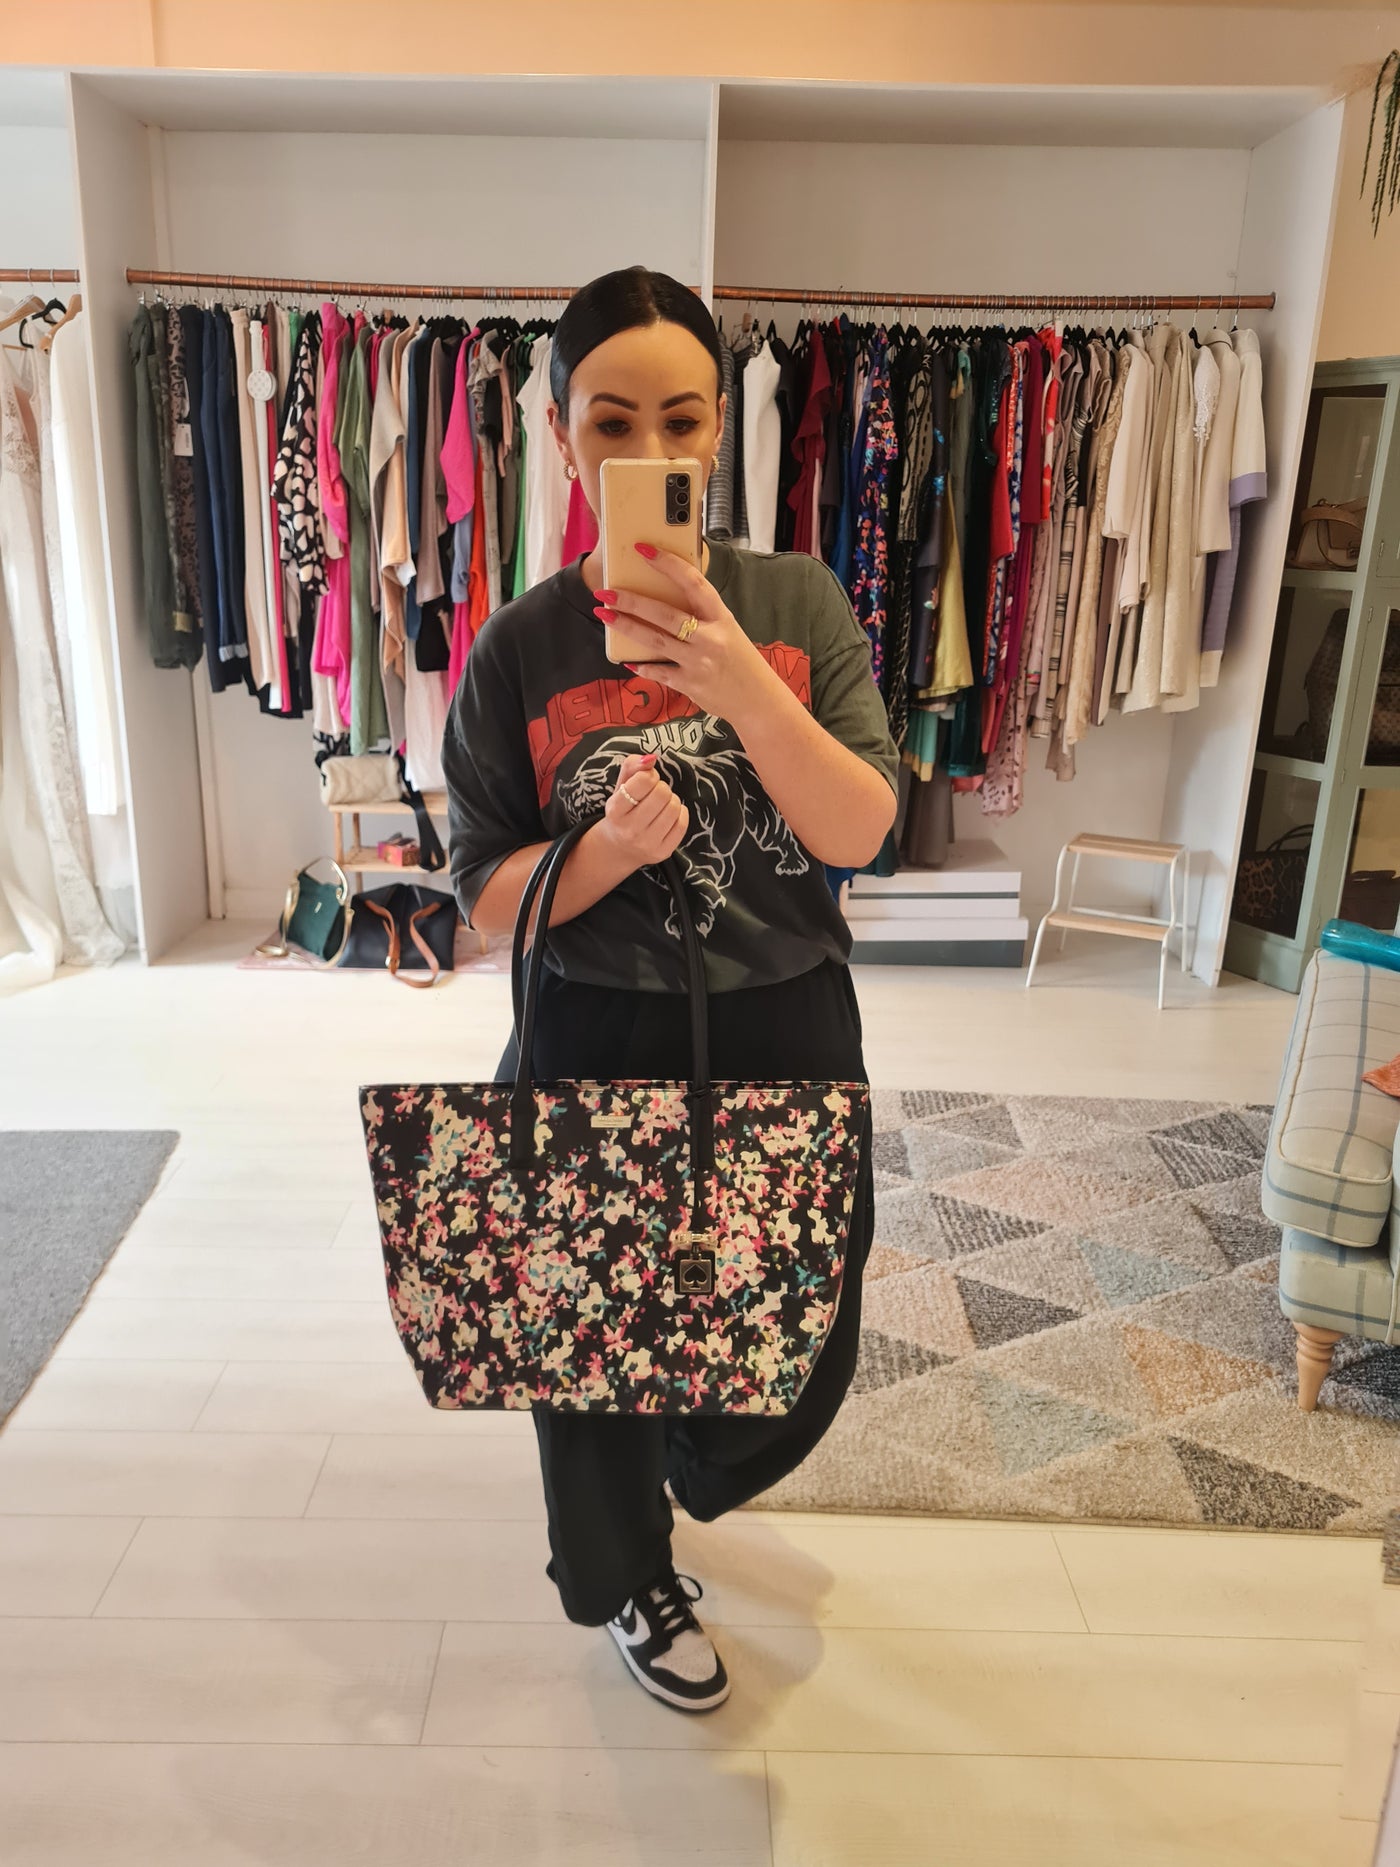 Kate Spade Black/Pink Floral Large Shopper